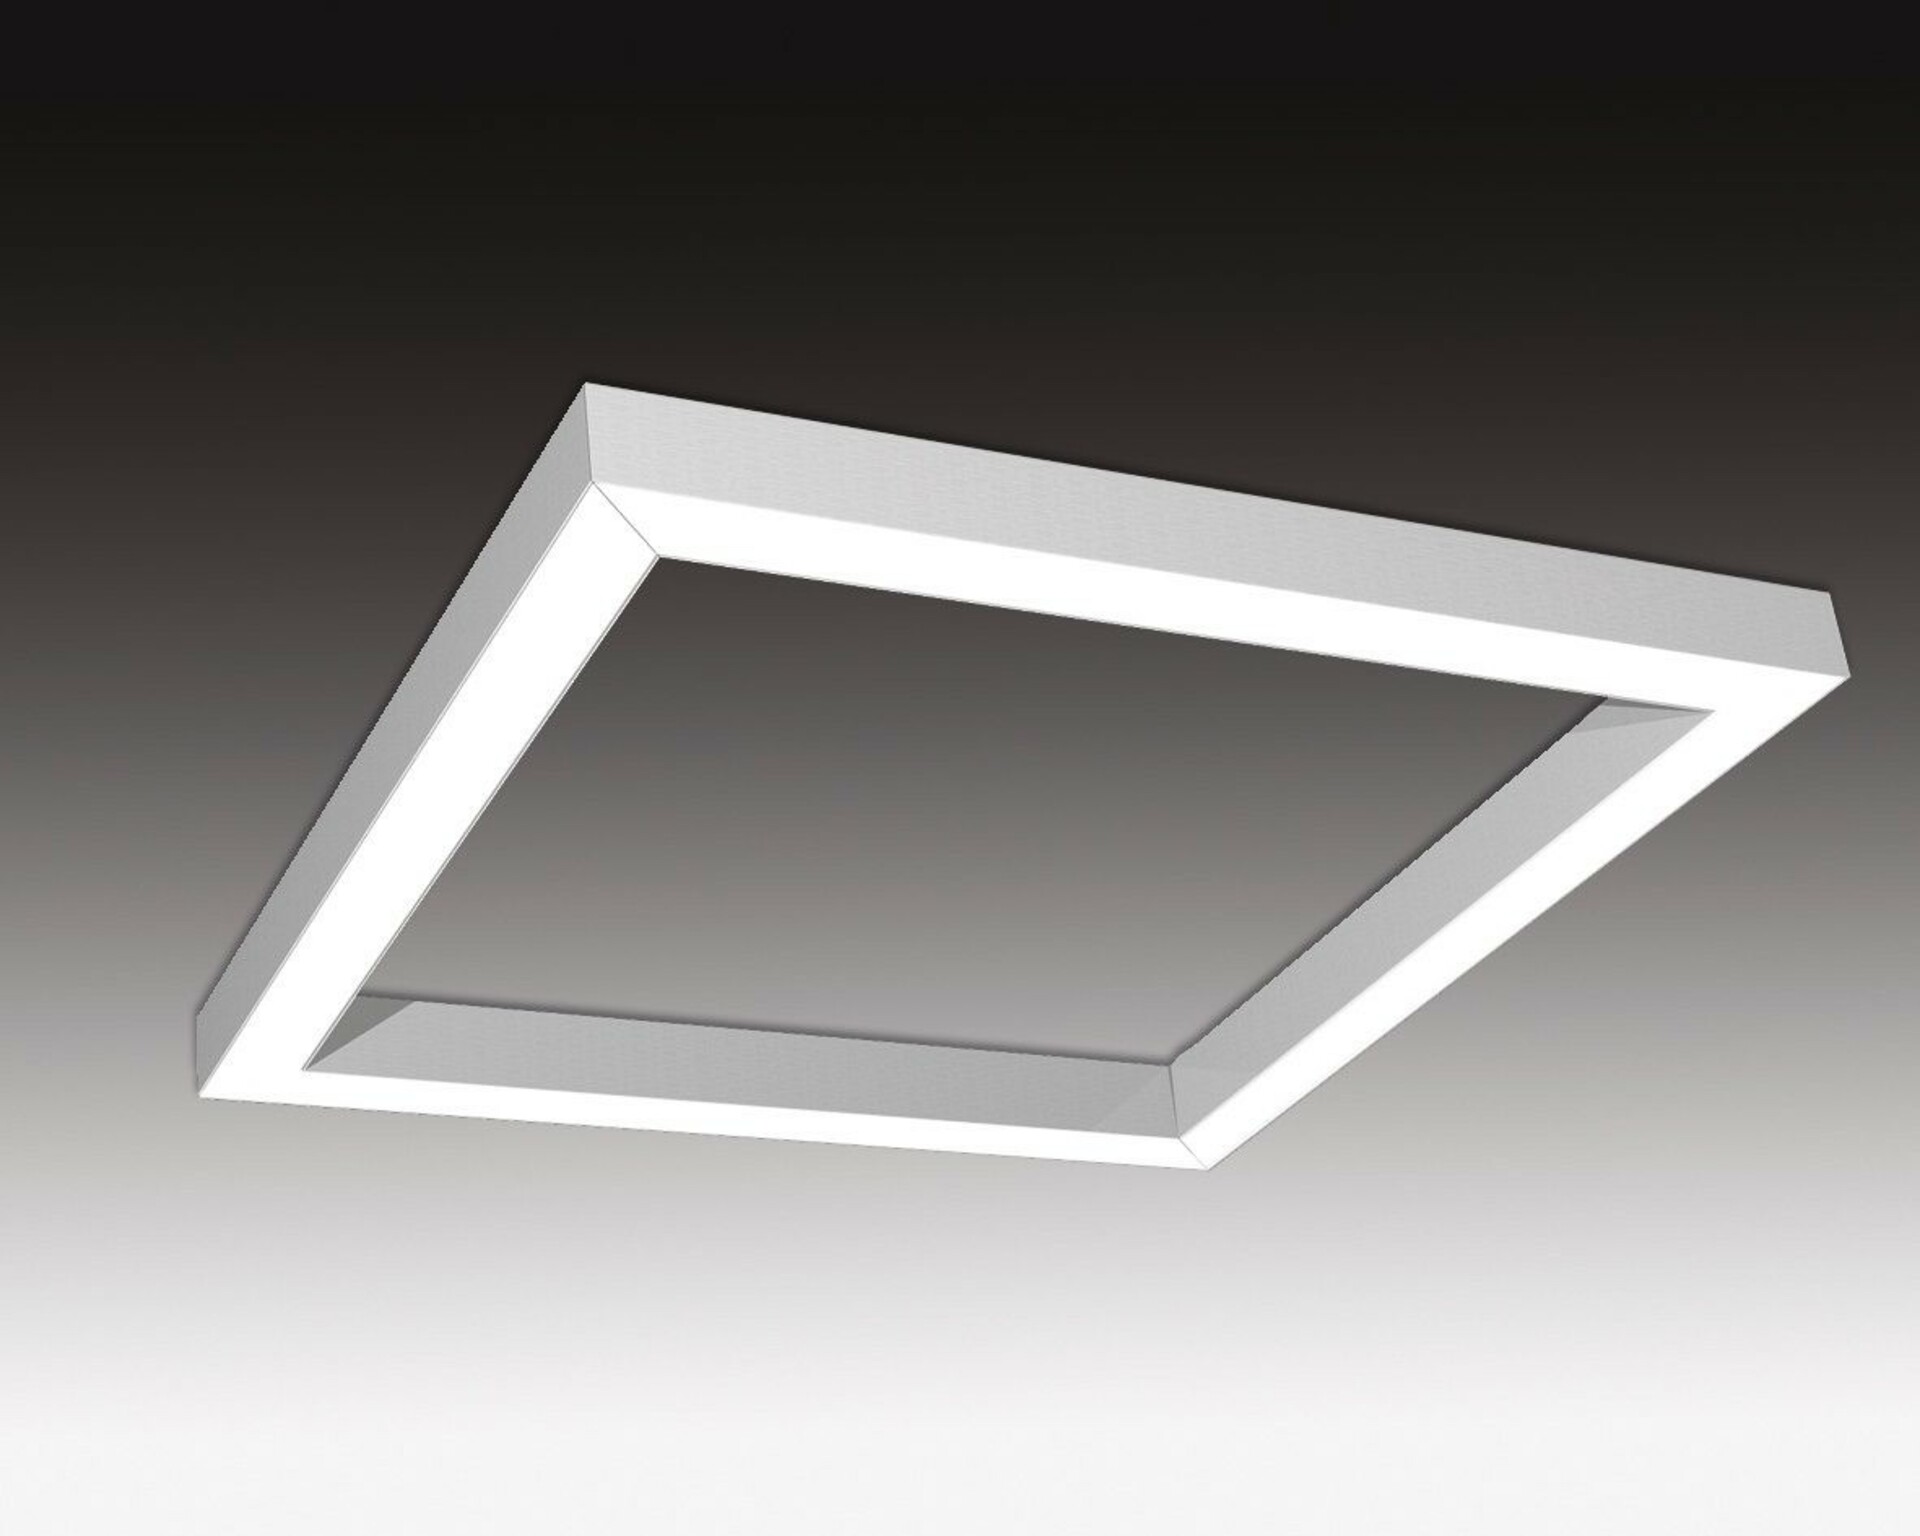 SEC Závěsné LED svítidlo nepřímé osvětlení WEGA-FRAME2-AA-DIM-DALI, 50 W, eloxovaný AL, 886 x 886 x 50 mm, 4000 K, 6540 lm 321-B-004-01-00-SP